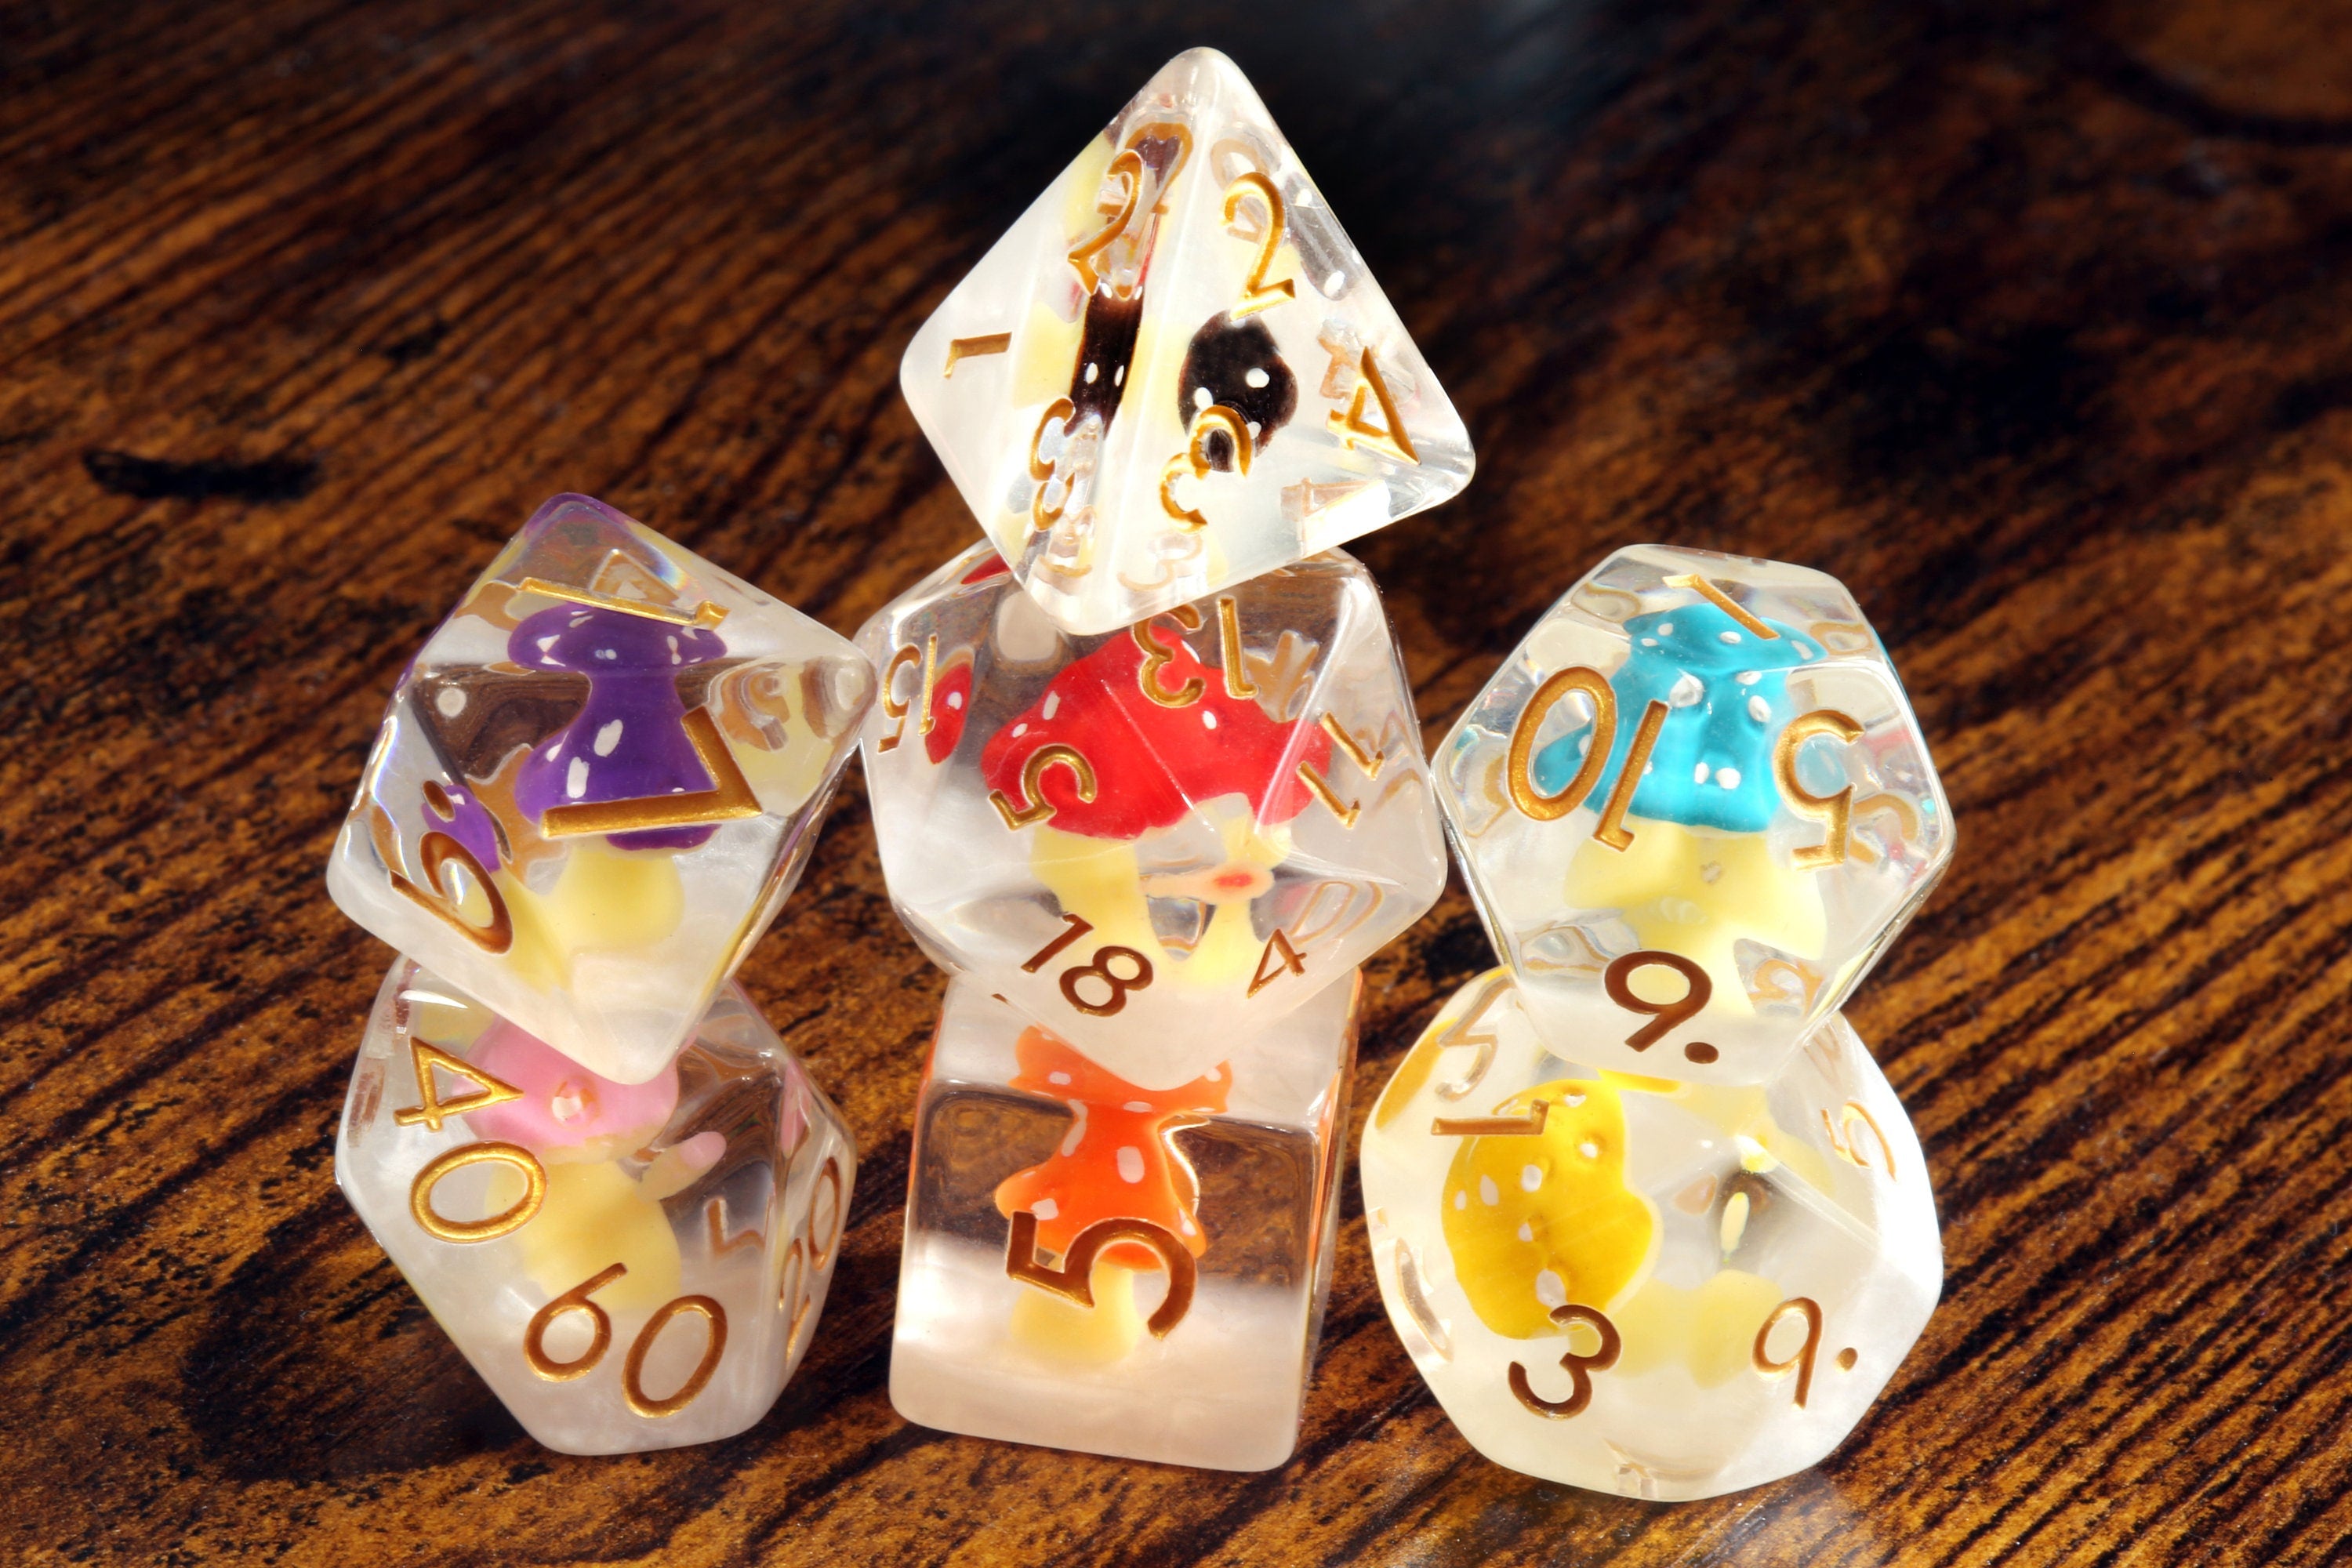 Mushroom Familly dice box and Multicolored Mushroom dice set